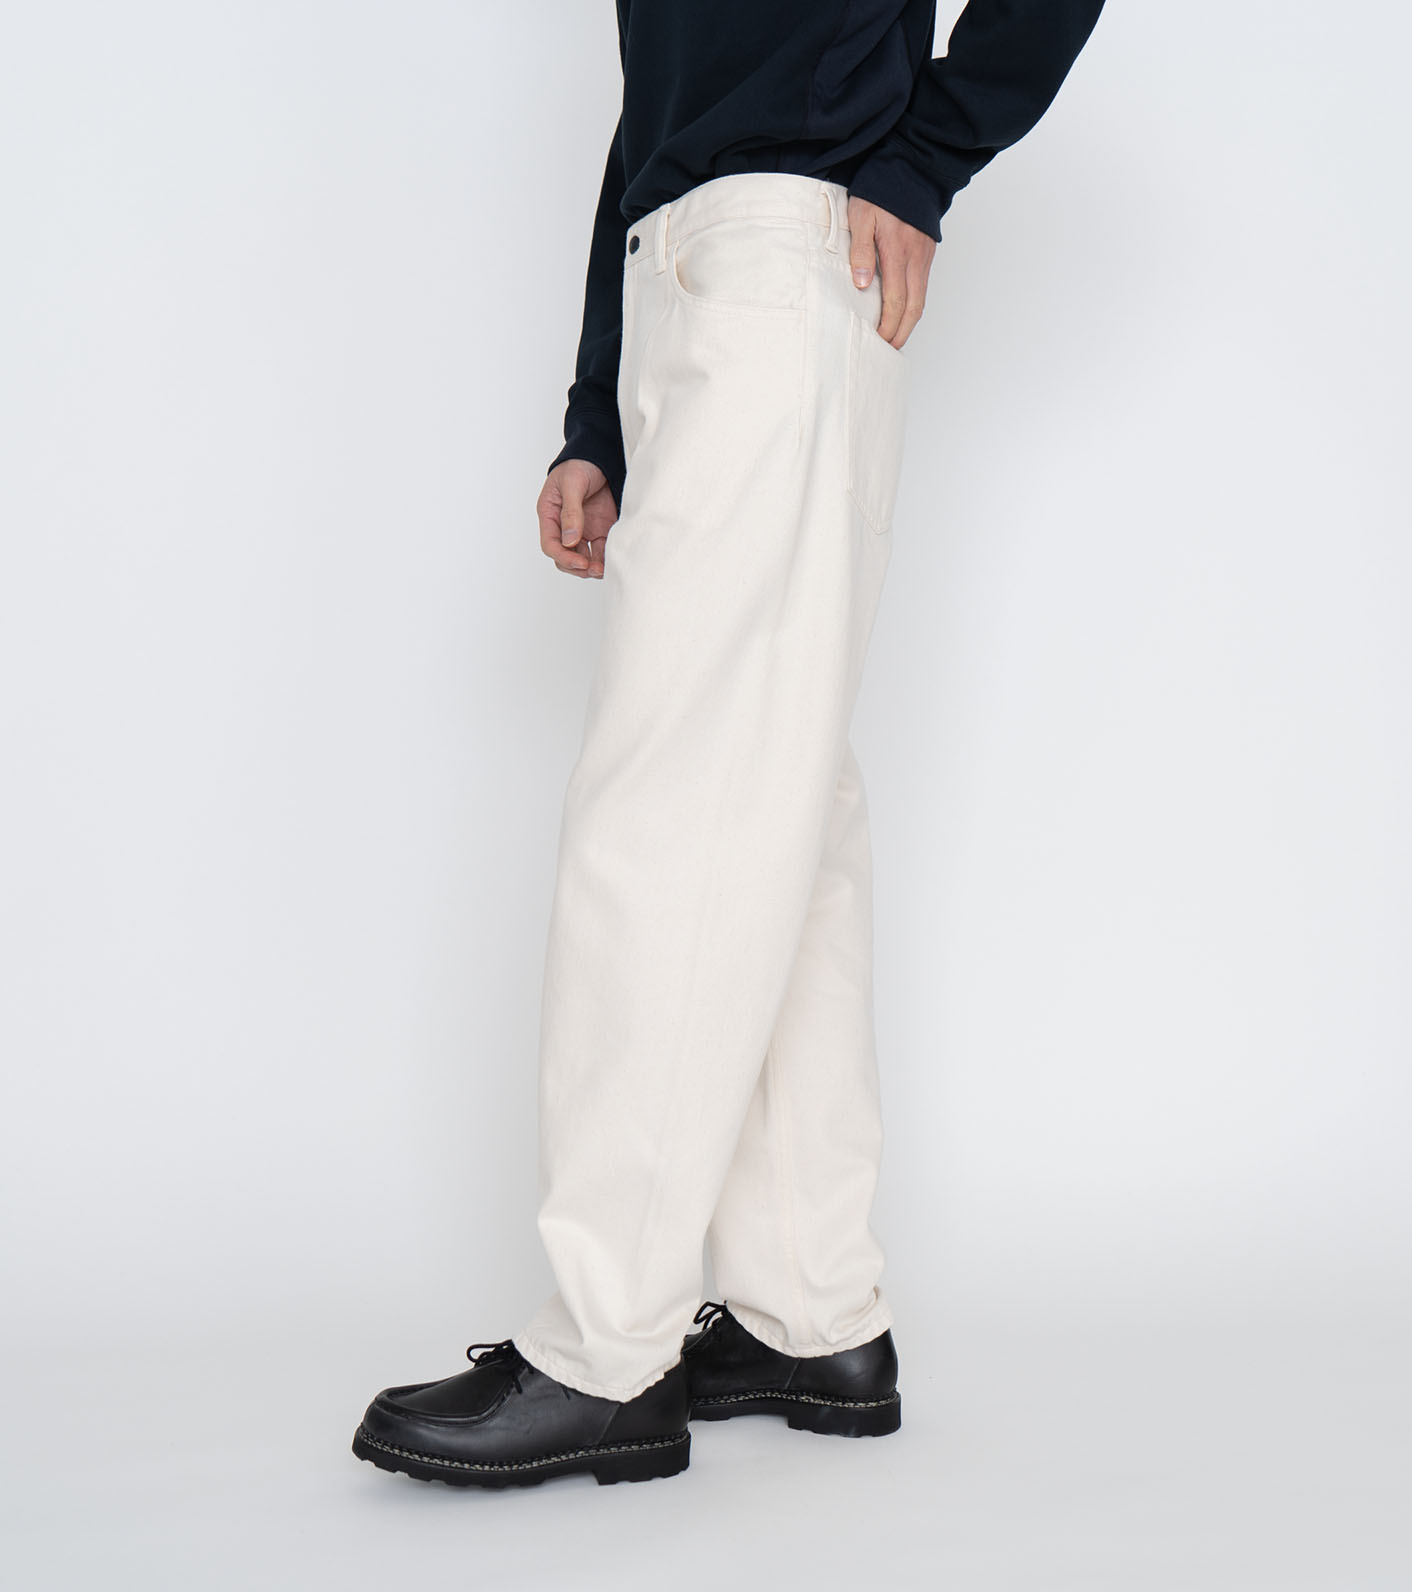 nanamica(ナナミカ) 5 Pockets Pants メンズ パンツ